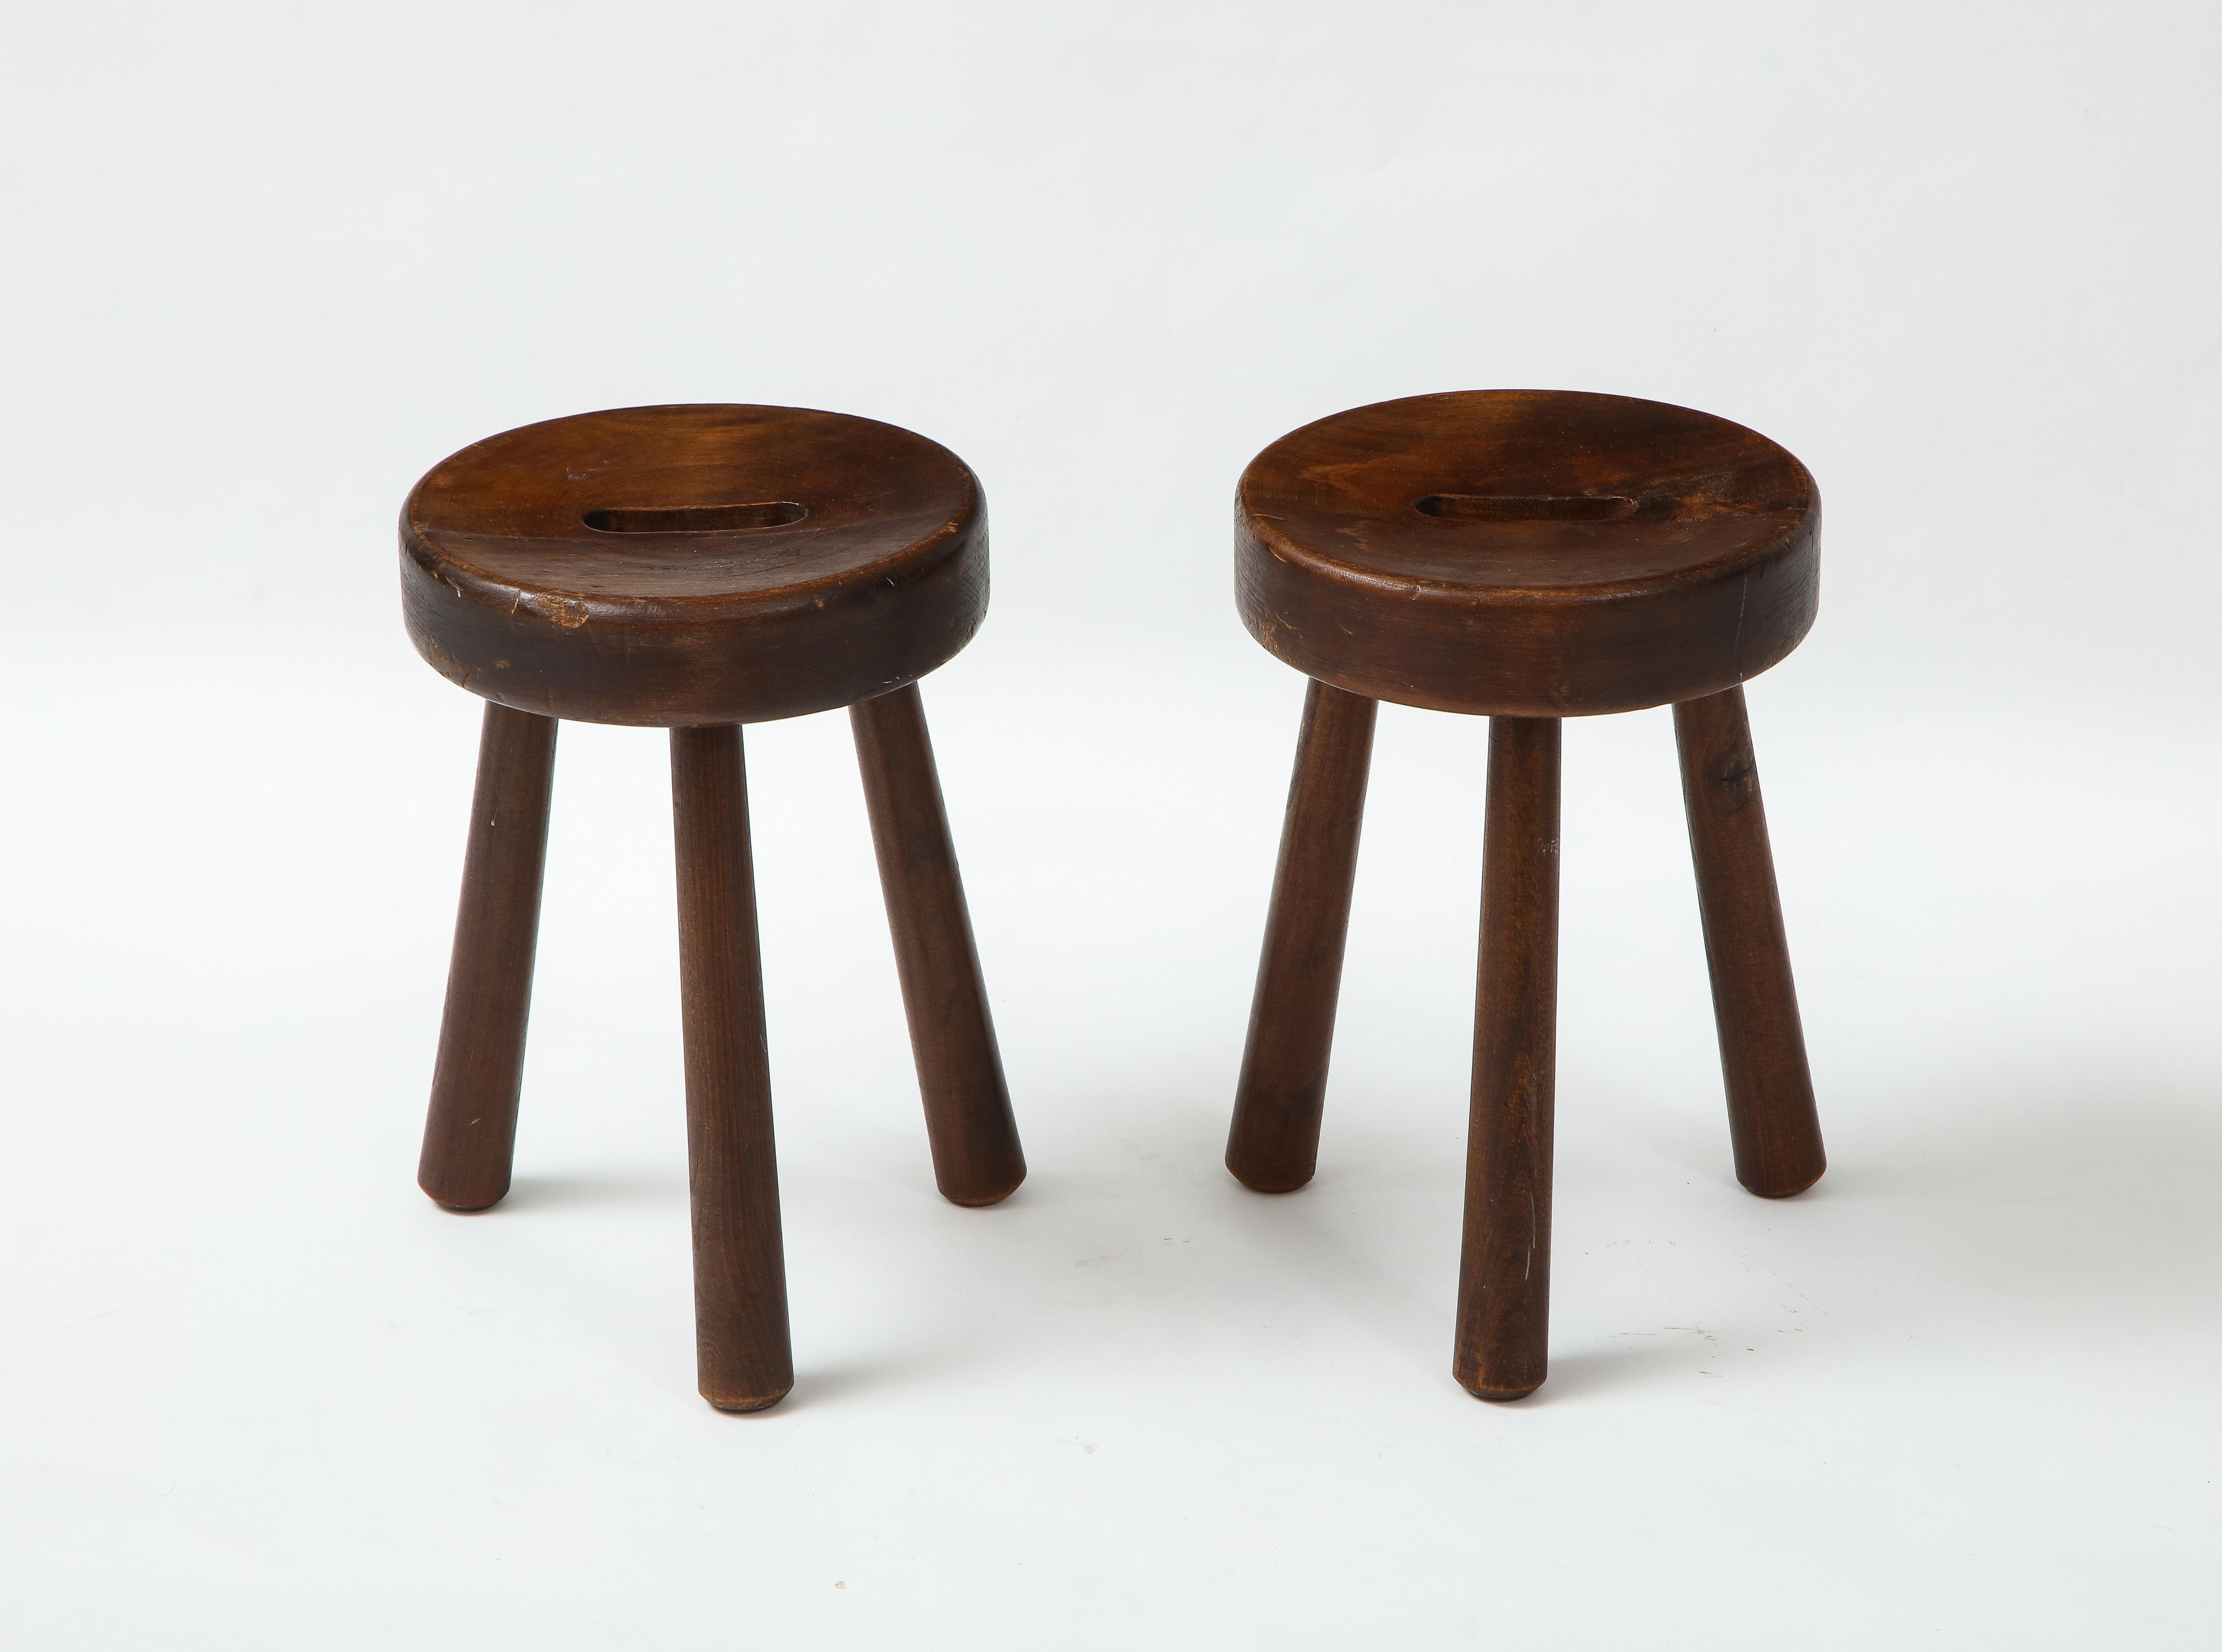 Pair of Folk Art Alpine stools, France, c. 1950 
Pine
H: 13.75 Diam. 9.25 in.